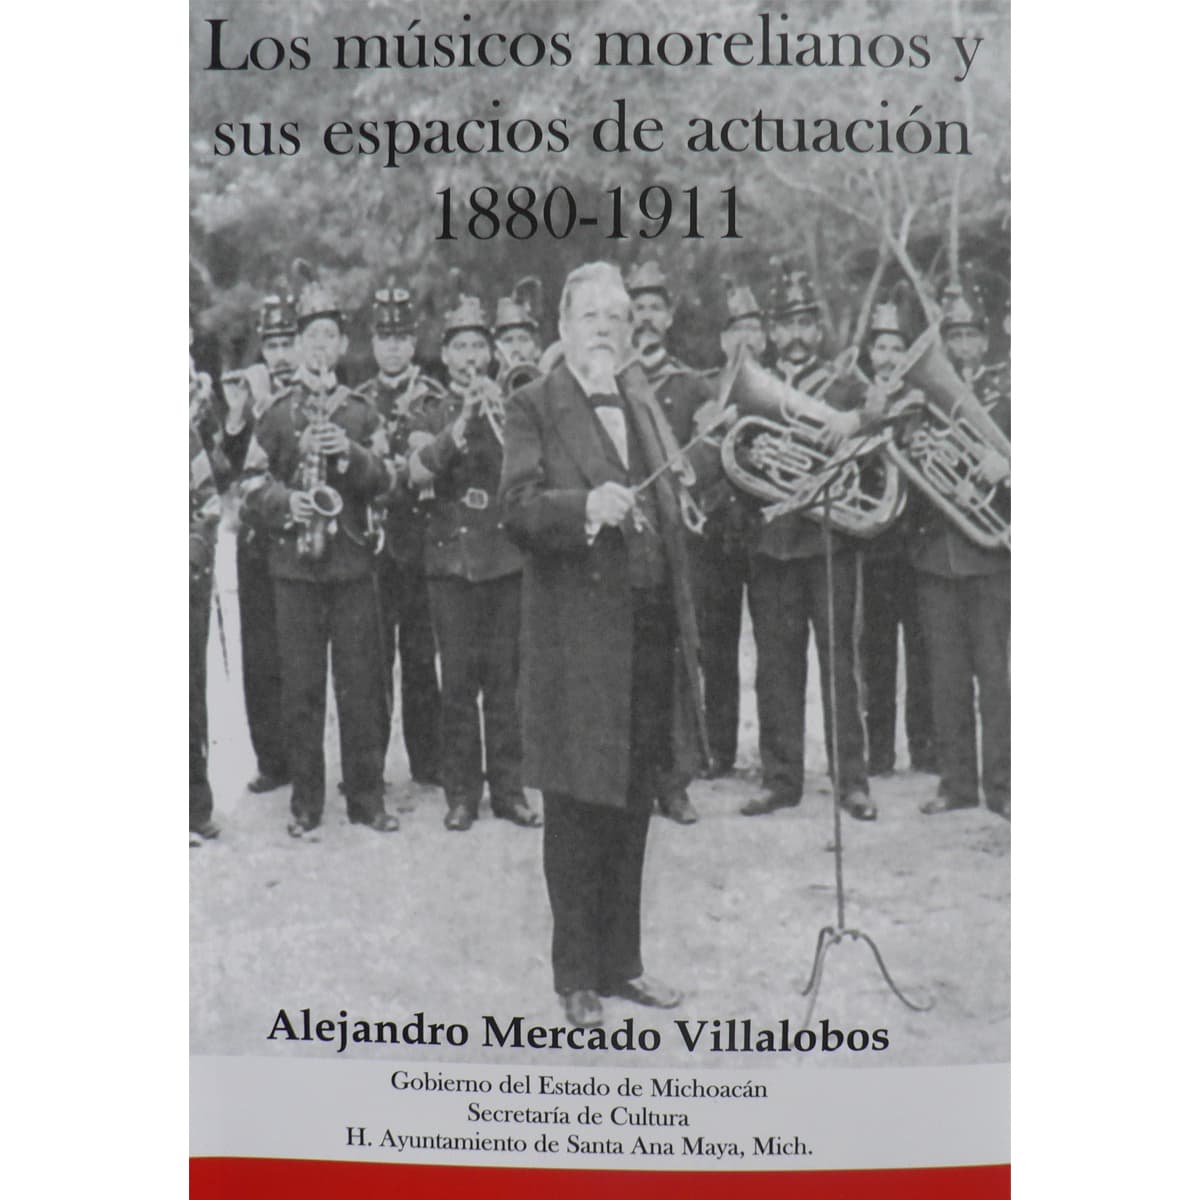 LOS MÚSICOS MORELIANOS Y SUS ESPACIOS DE ACTUACIÓN 1880-1911